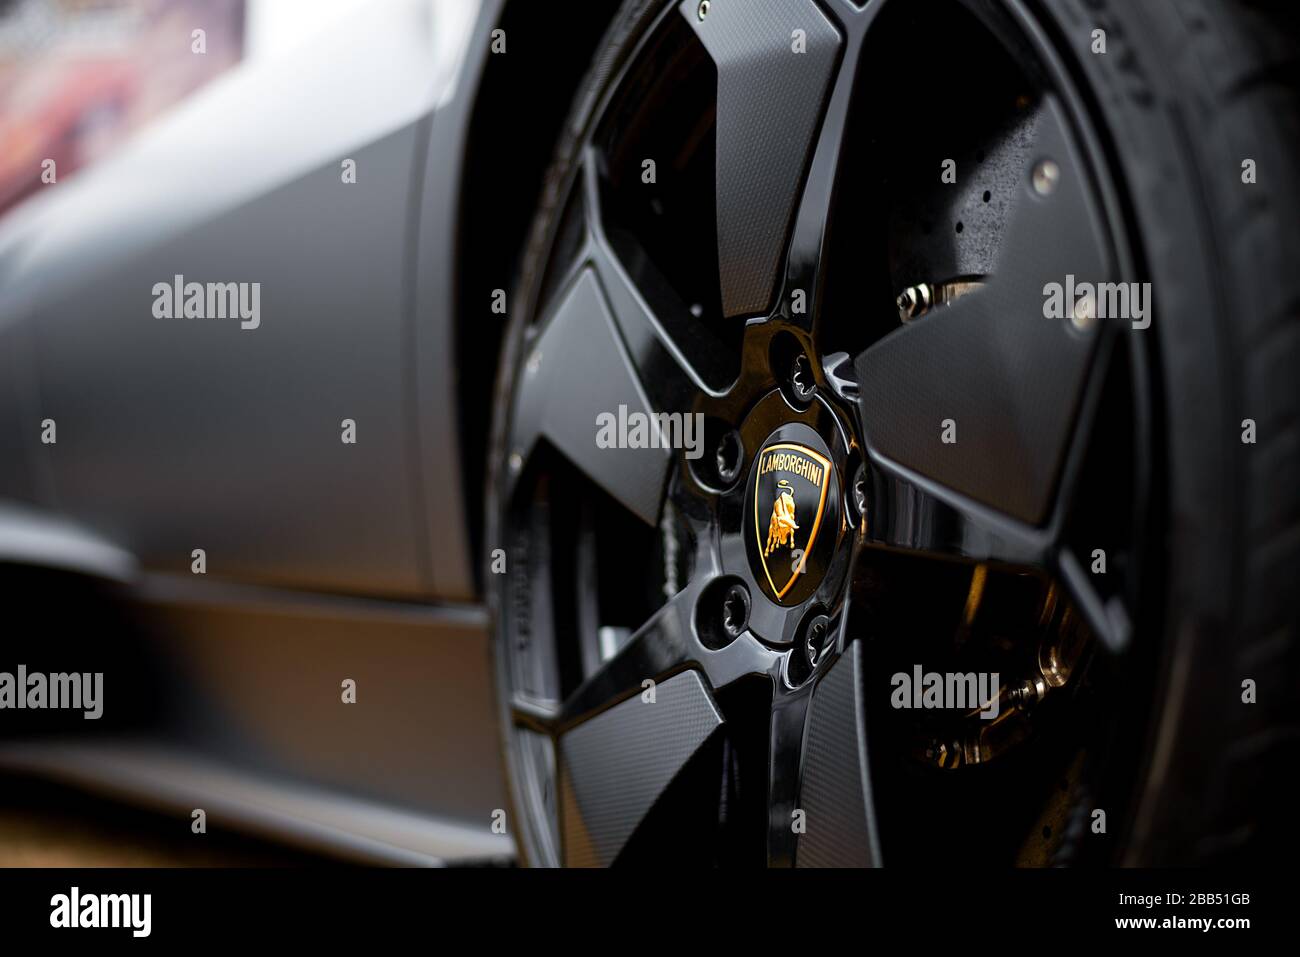 Gros plan sur le badge Lamborghini sur l'impressionnante roue avant d'une super voiture Lamborghini Huracan noir mat. Banque D'Images